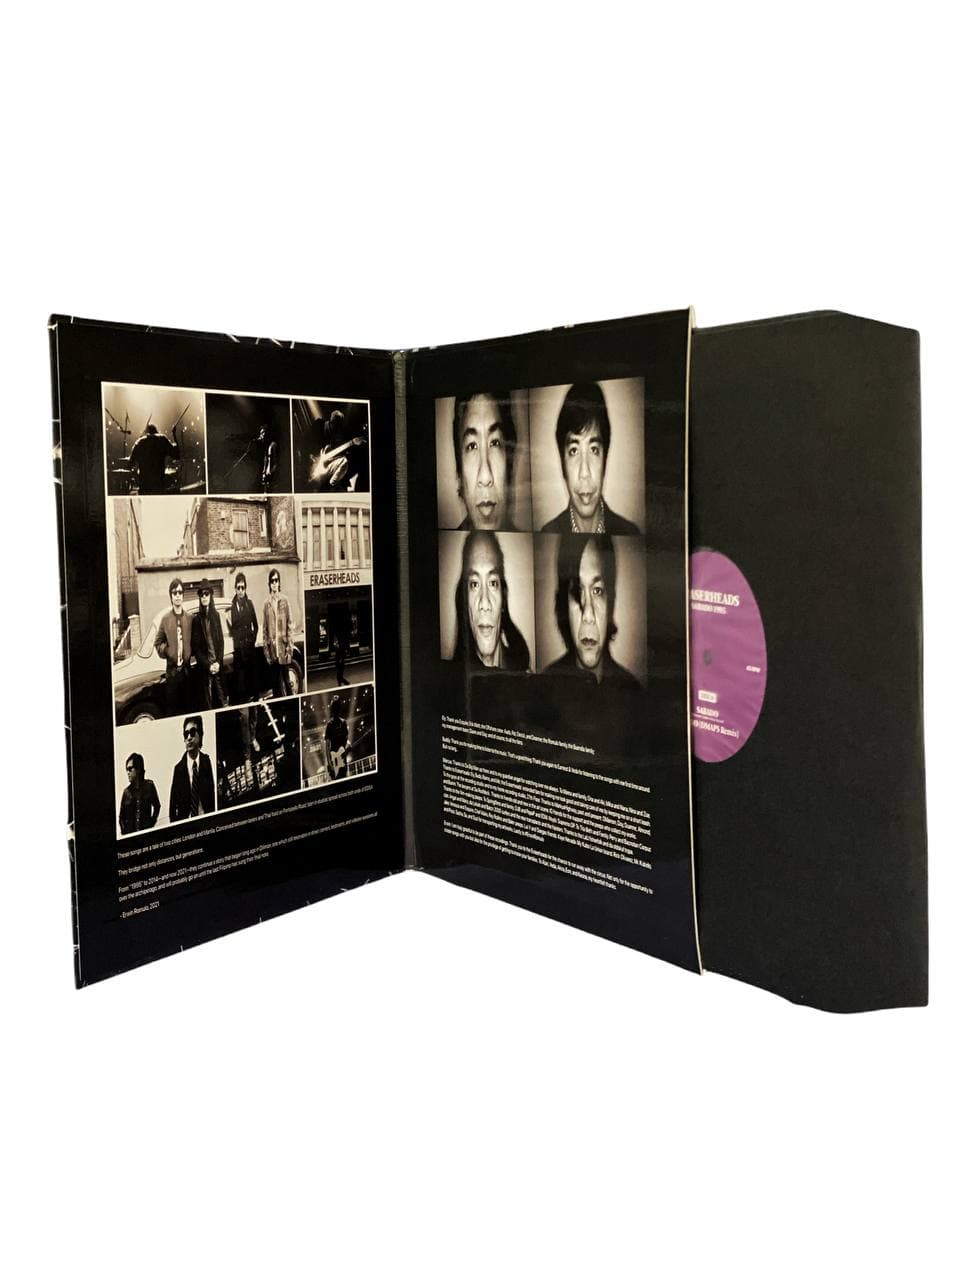 Eraserheads - Sabado/1995 LP (Offshore Music)